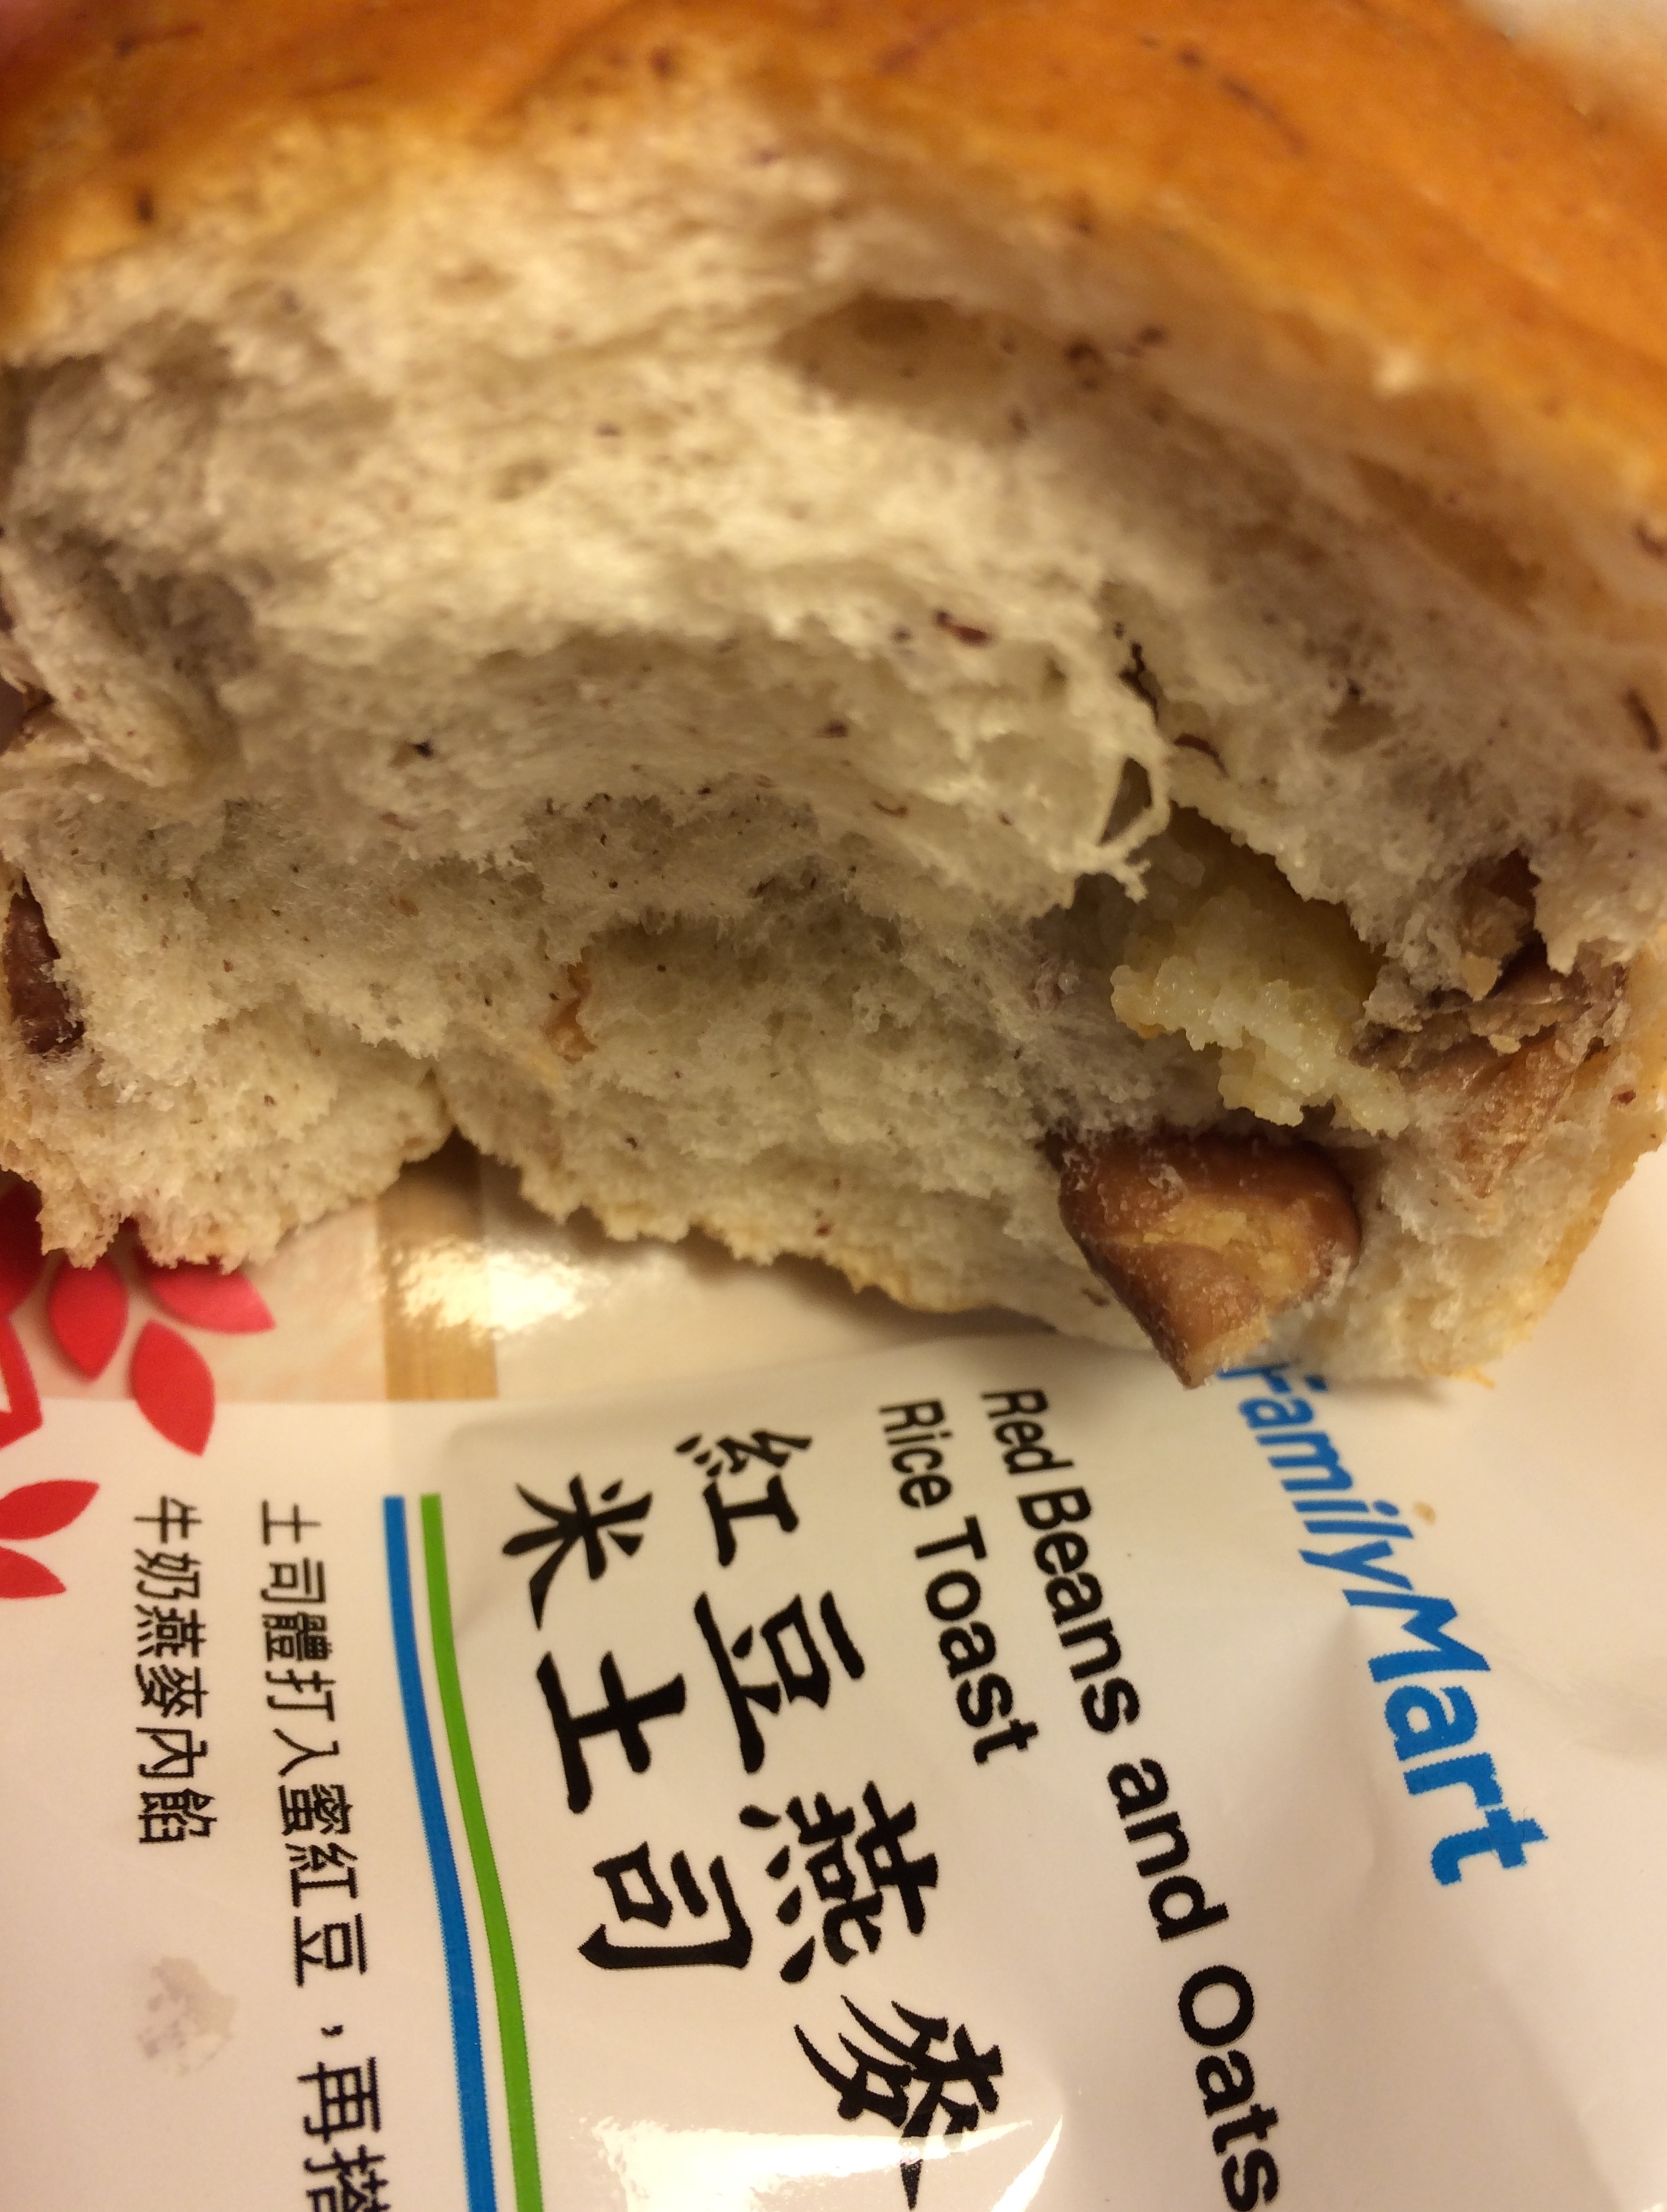 Eines der neuen Produkte: Brot aus Reismehl mit roten Bohnen